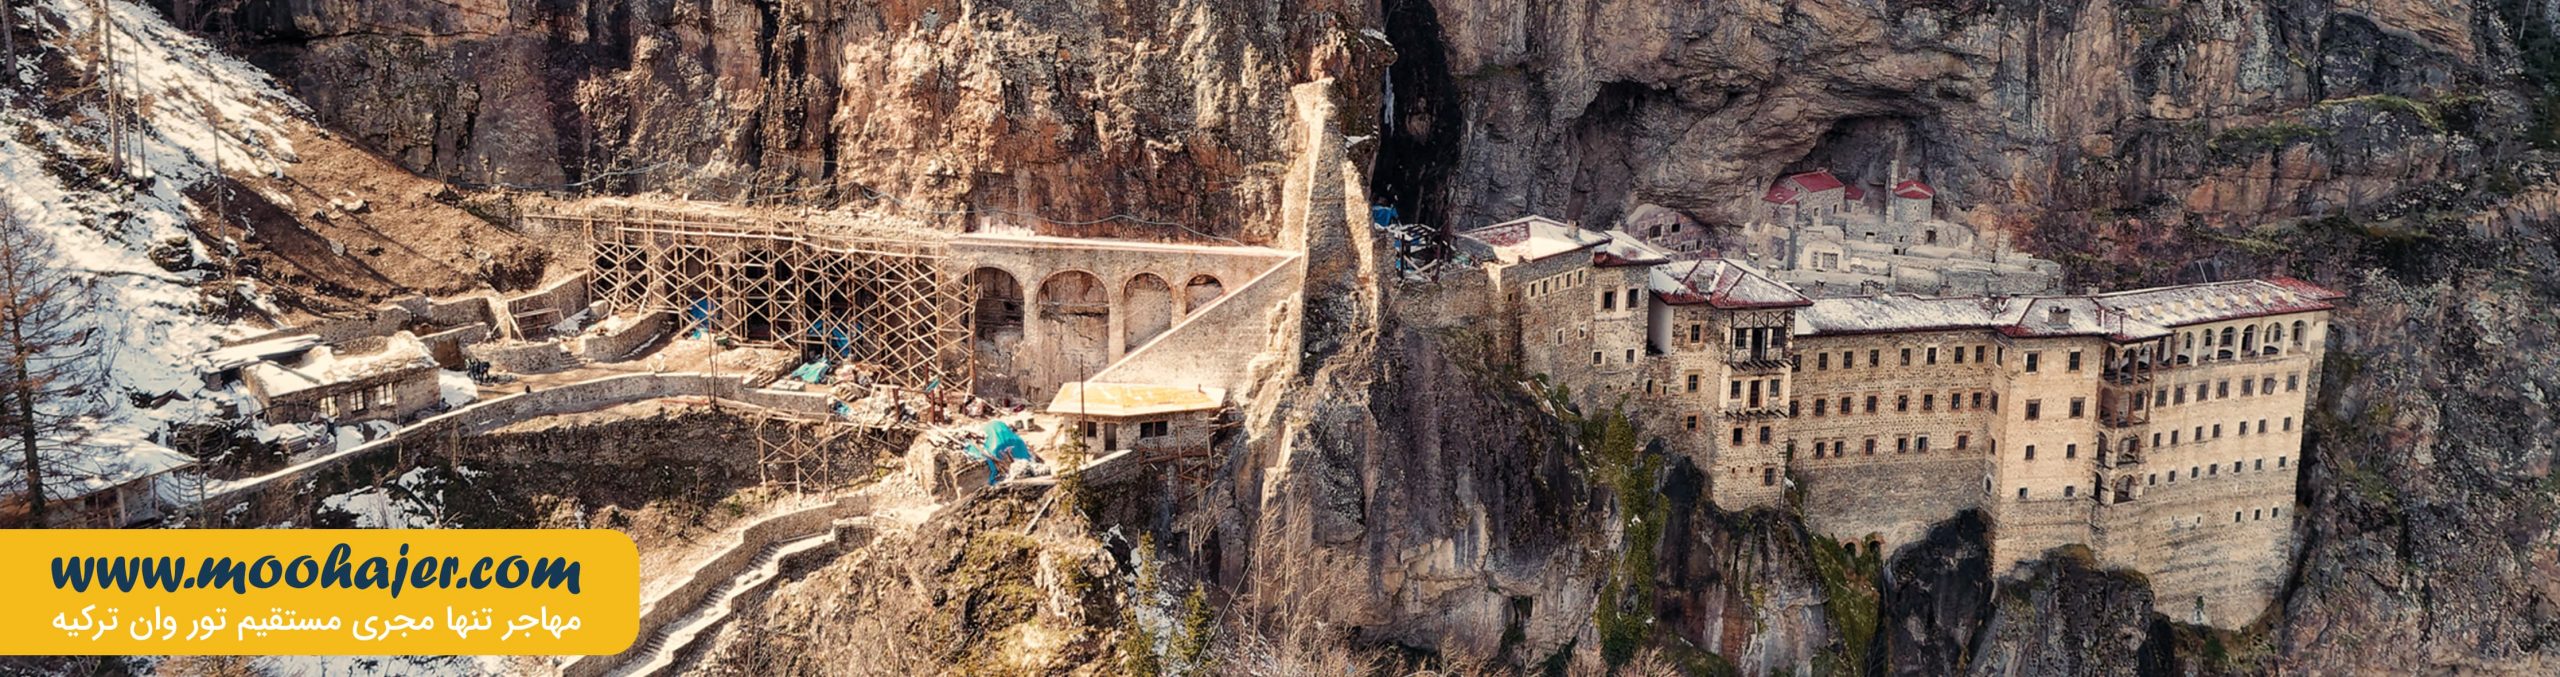 صومعه سوملا | Soumela Monastery | تور ترابزون | مهاجر سیر ایرانیان